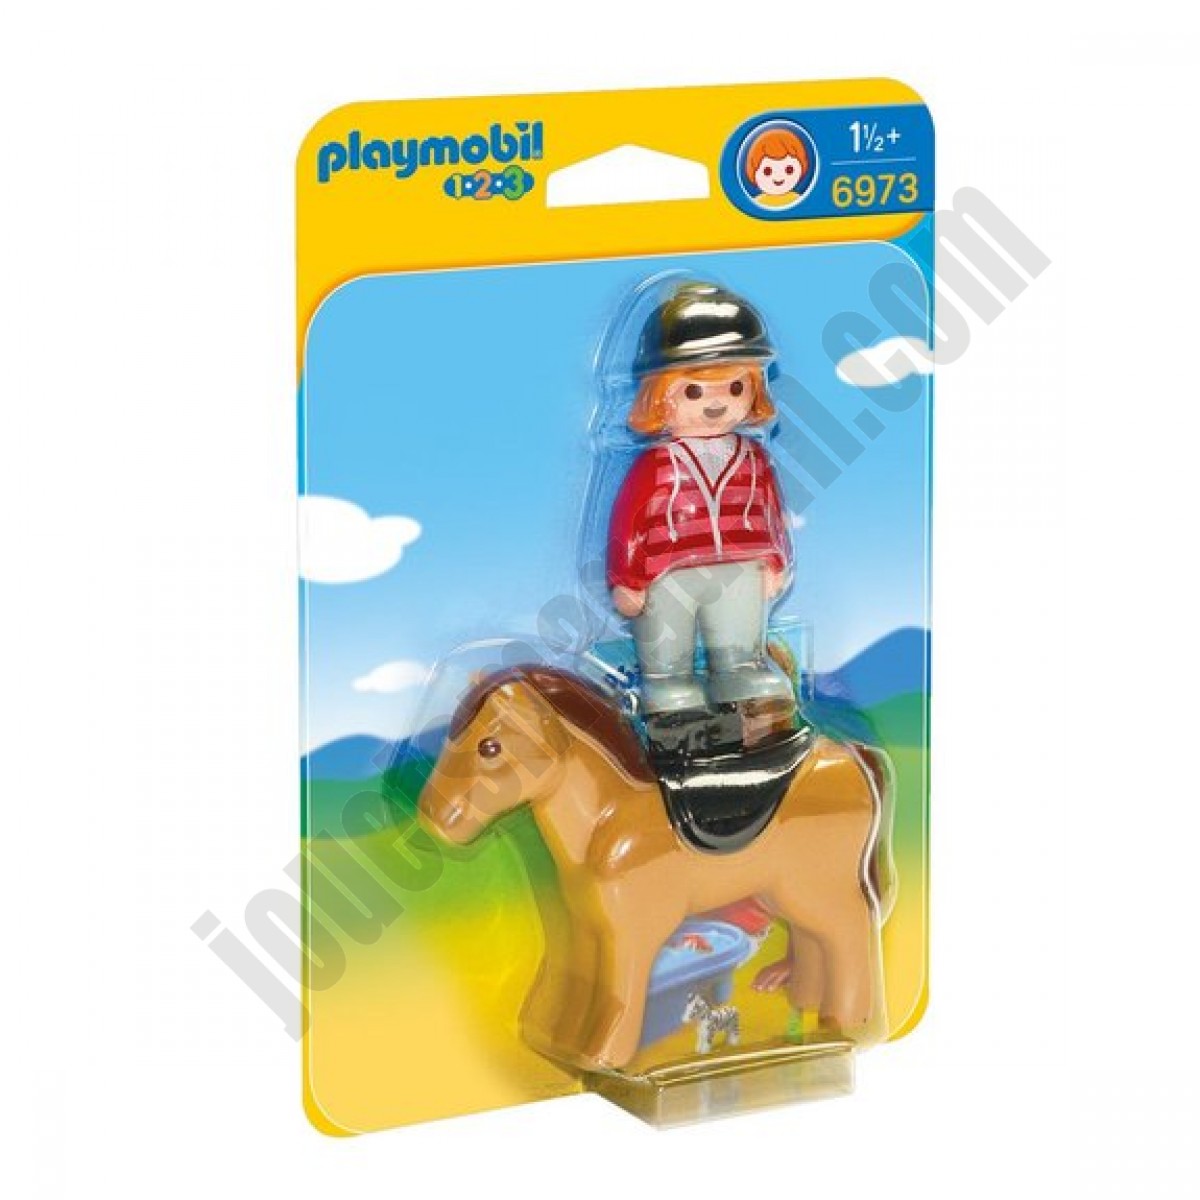 Cavalière avec cheval Playmobil 1.2.3 : 6973 ◆◆◆ Nouveau - Cavalière avec cheval Playmobil 1.2.3 : 6973 ◆◆◆ Nouveau